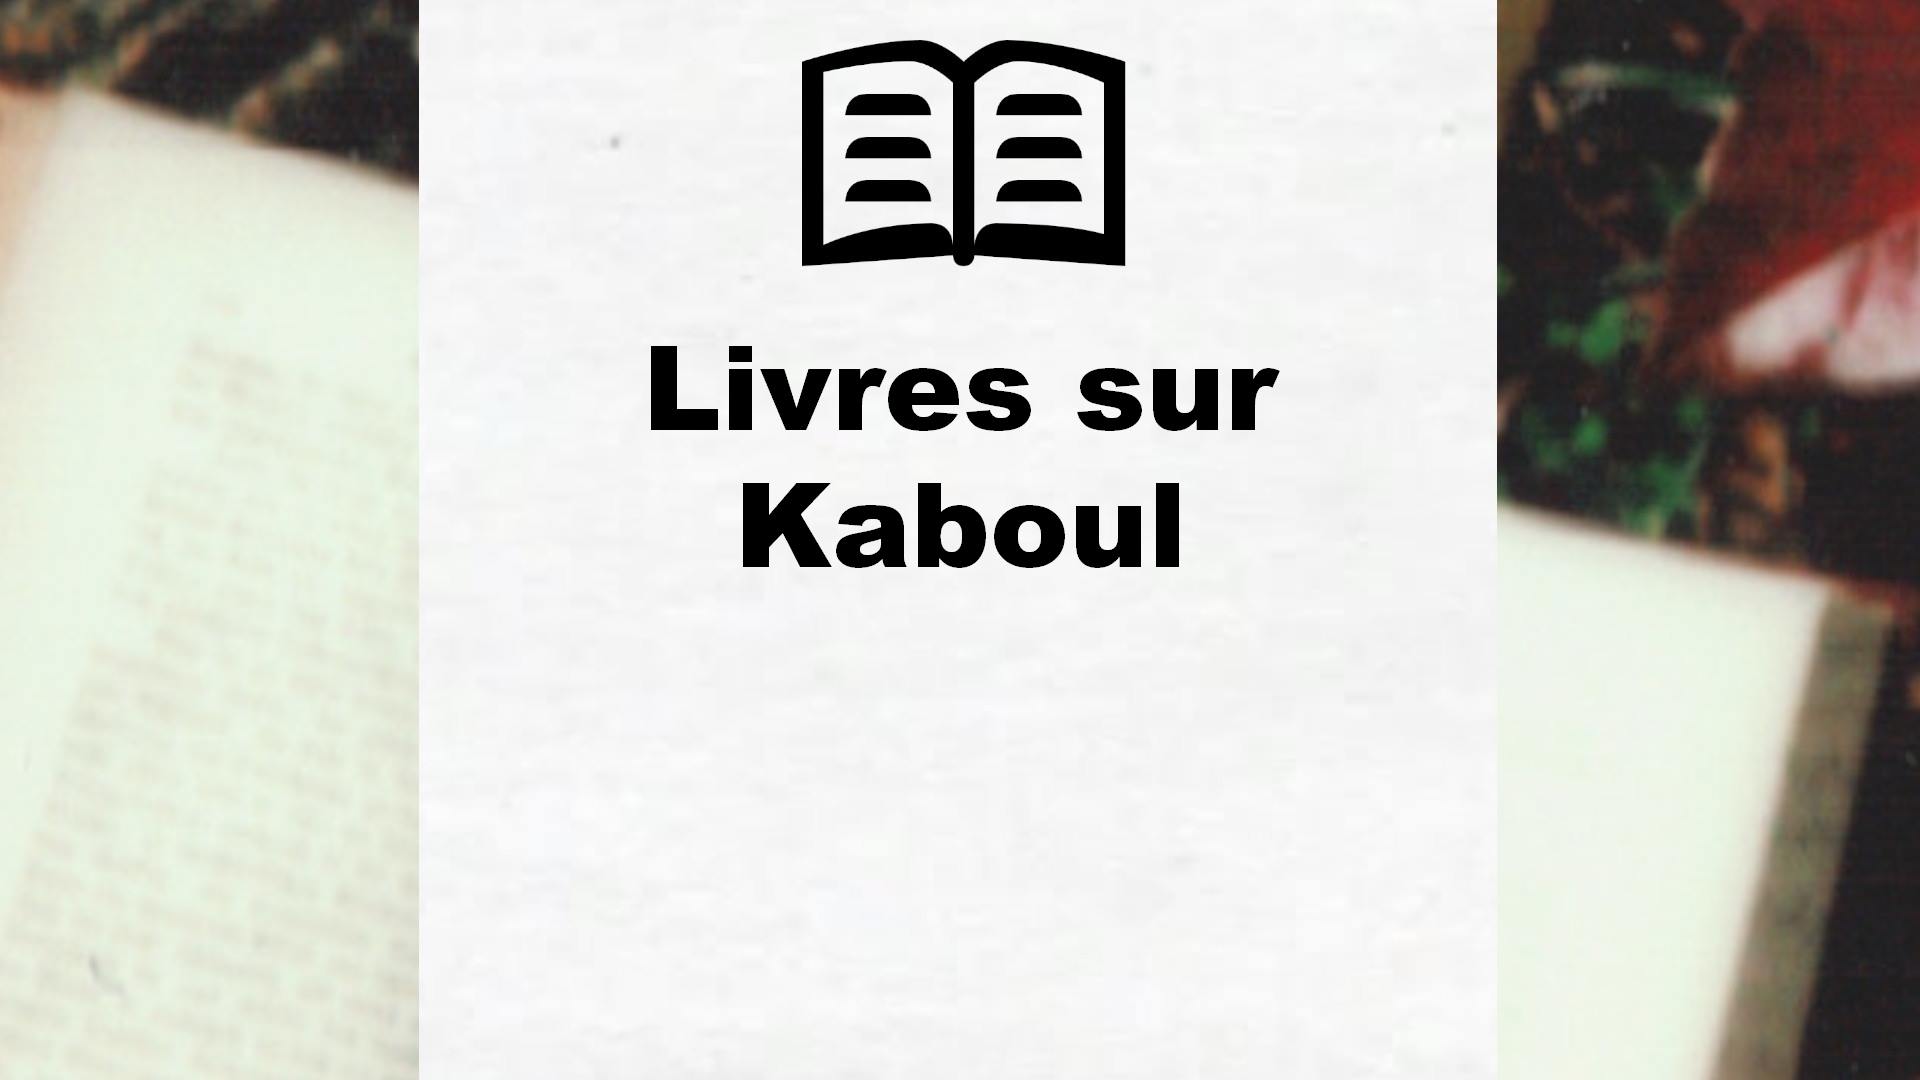 Livres sur Kaboul